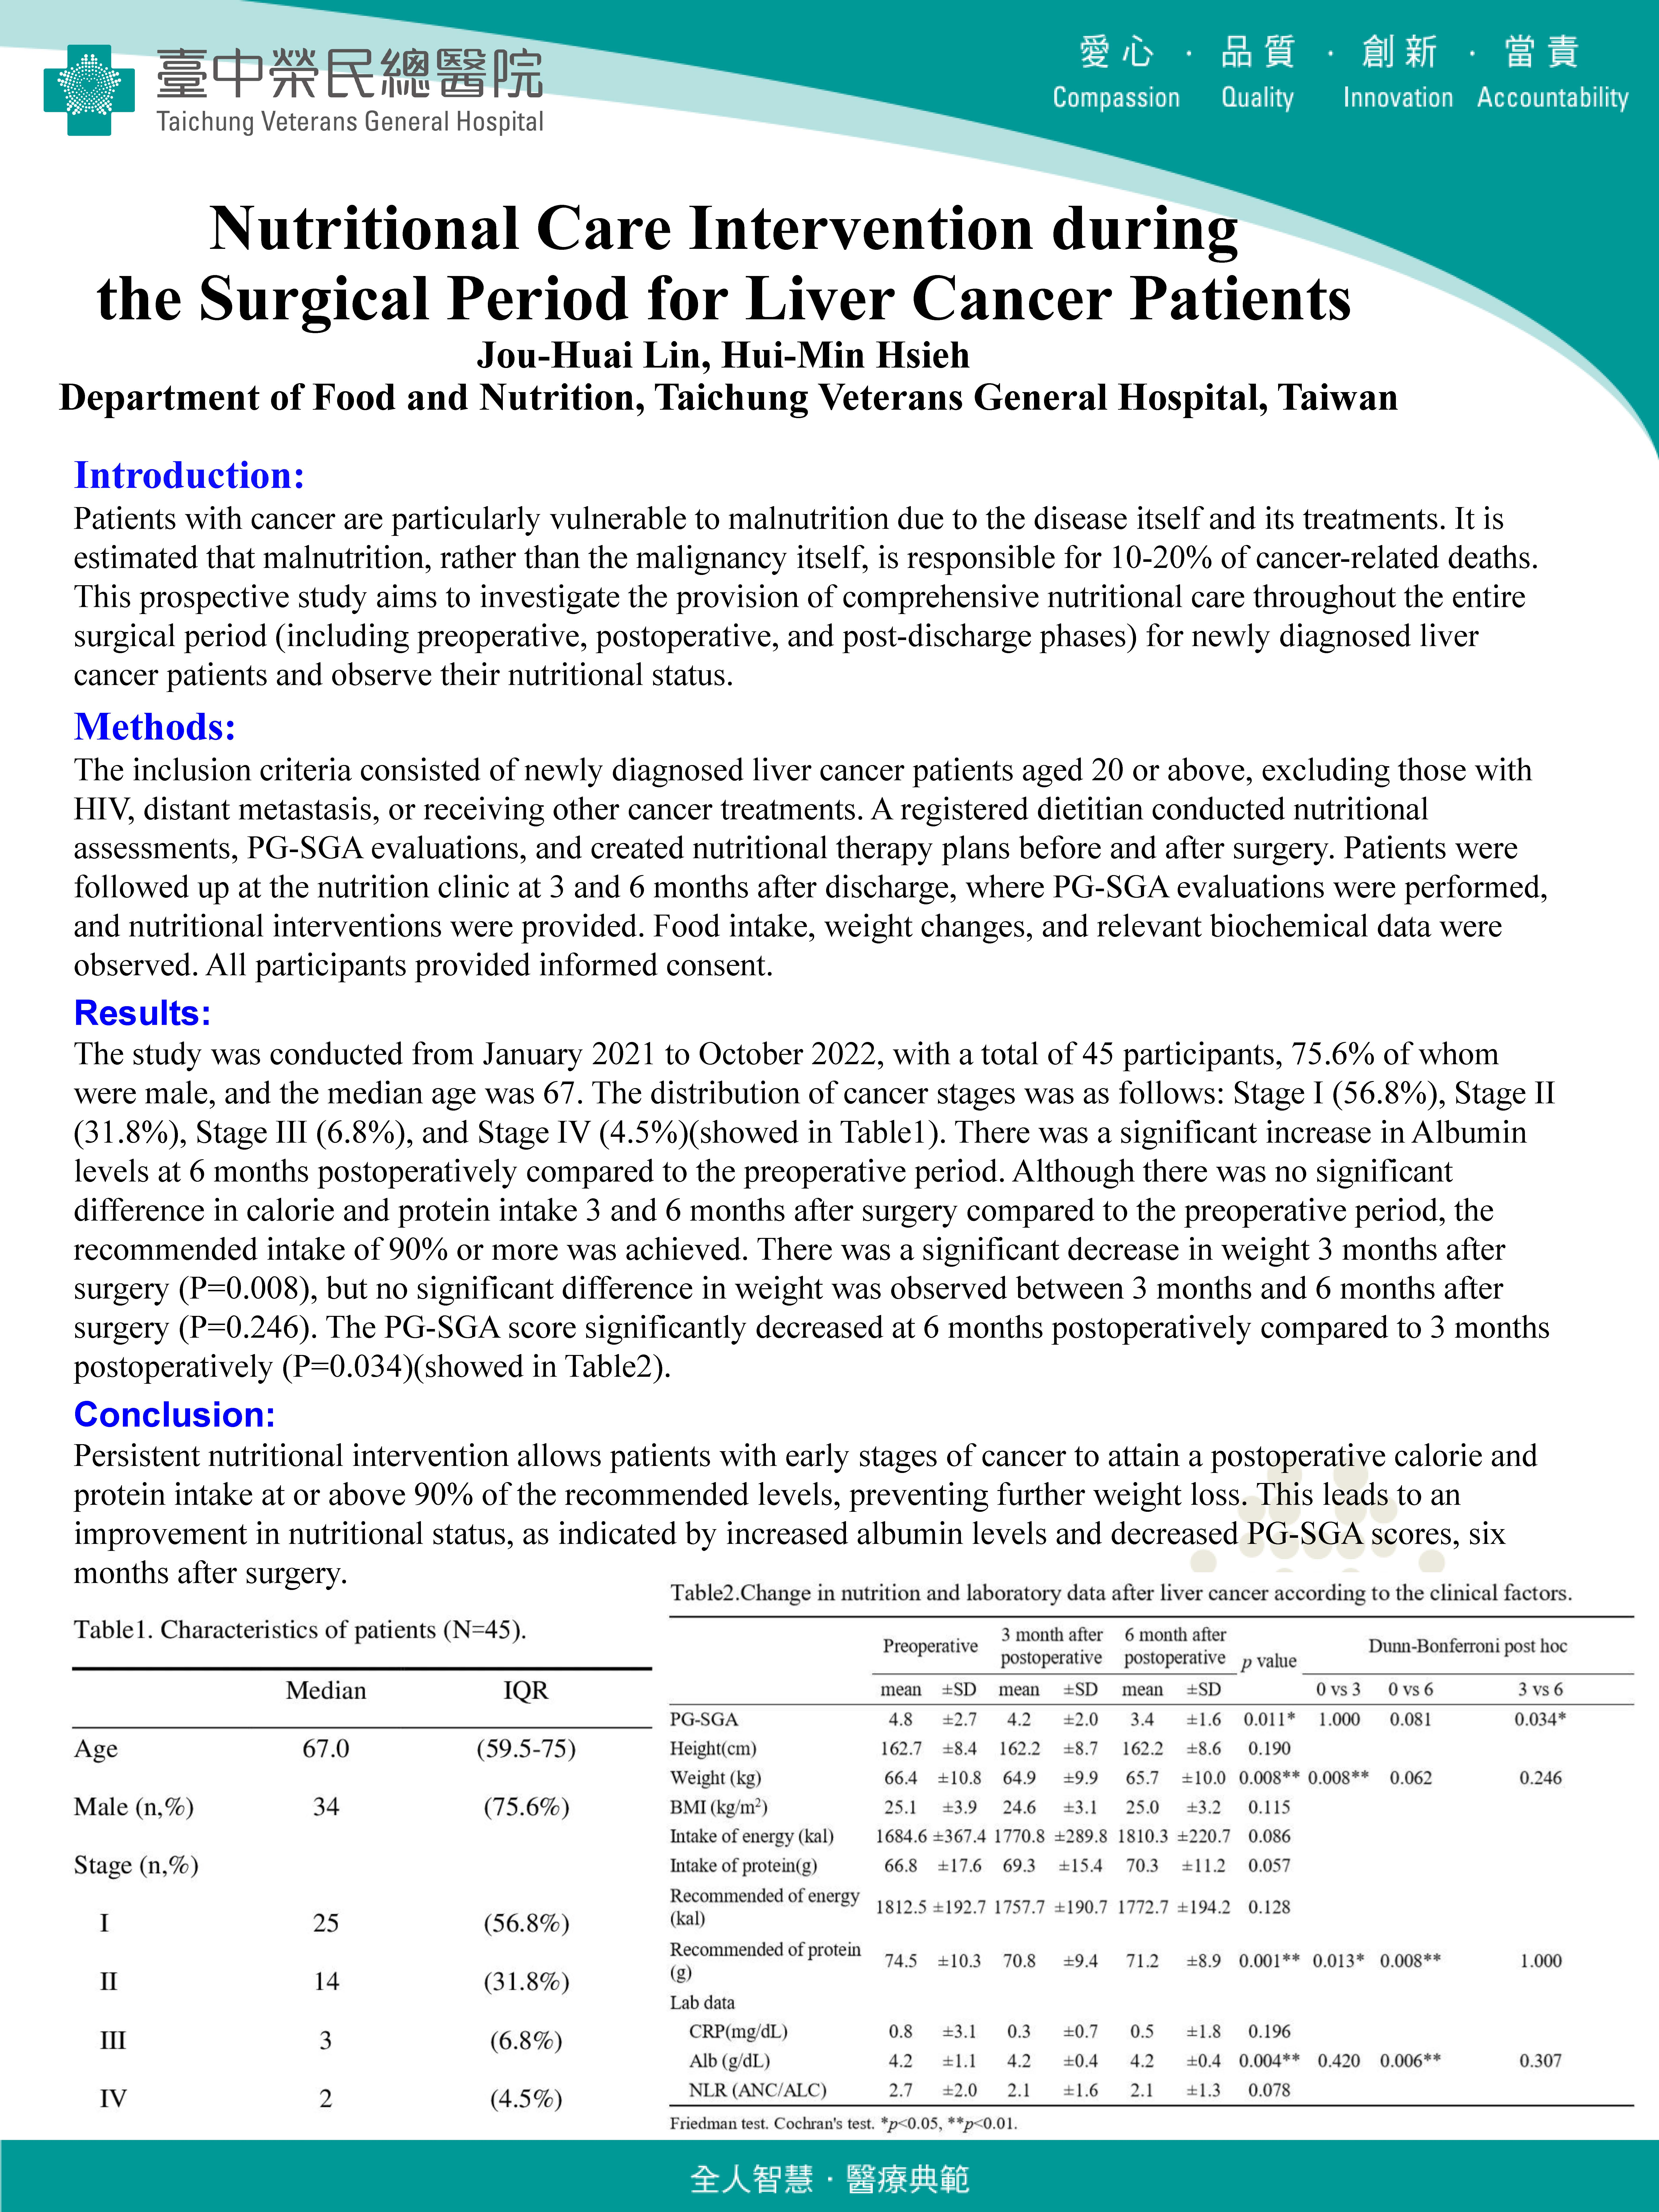 2023年_PENSA投稿_Nutritional Care Intervention during the Surgical Period for Liver Cancer Patients